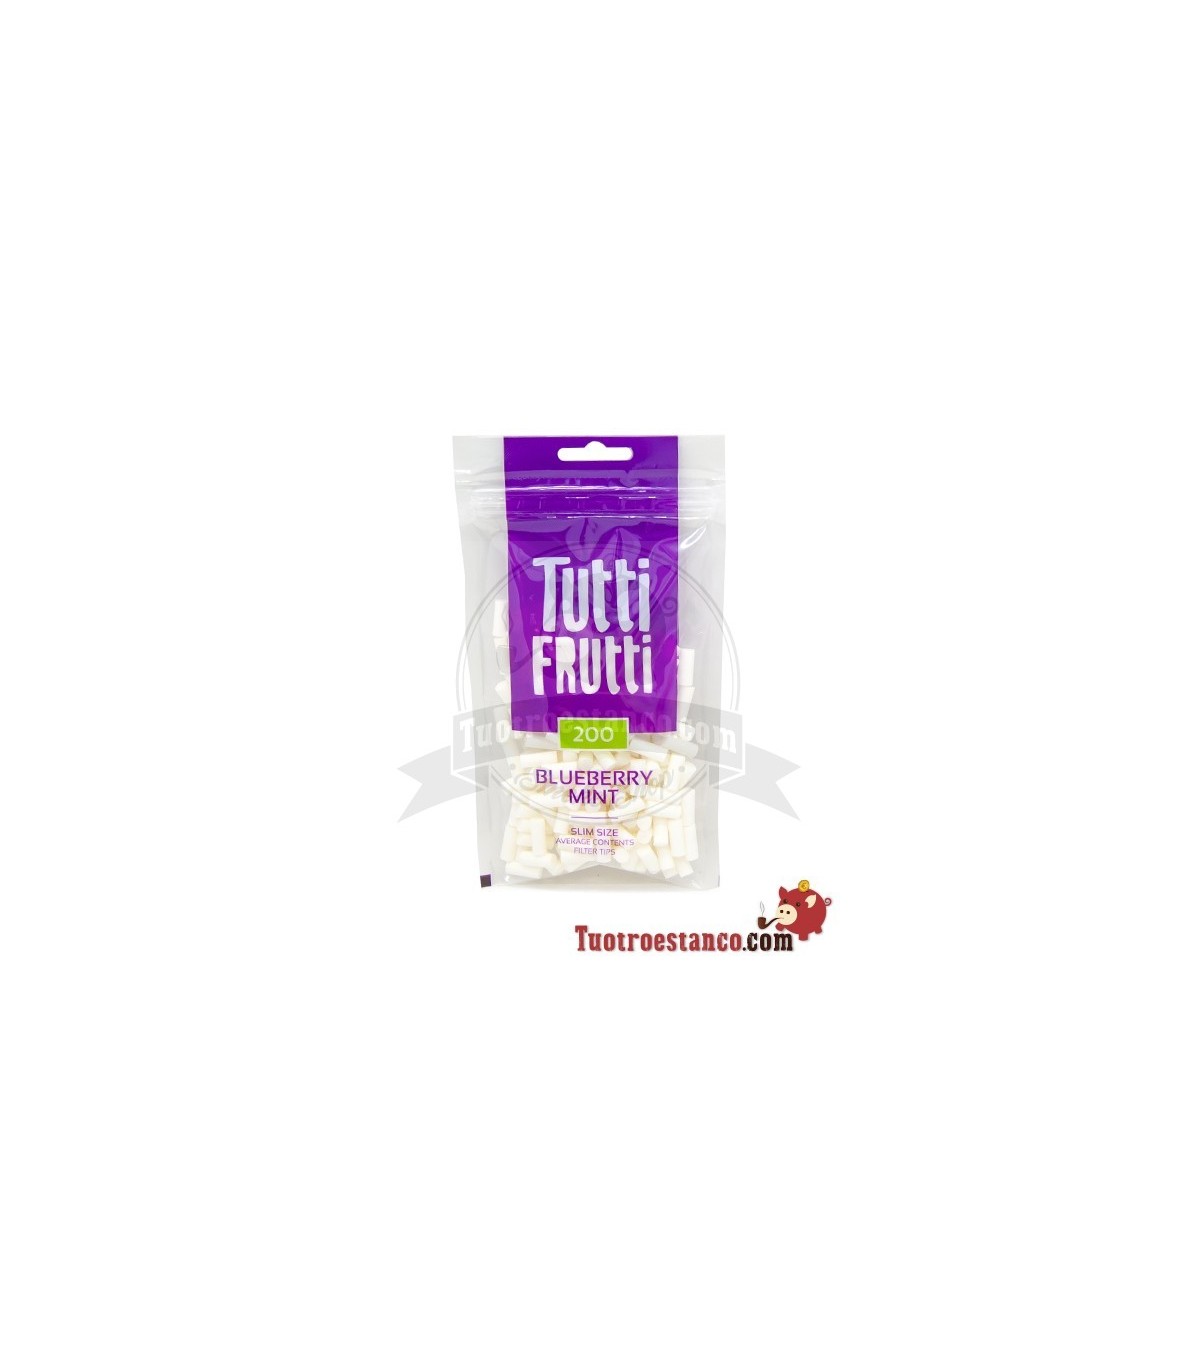 Filtros Tutti frutti Arándanos y Menta 6 mm 20 bolsas de 200 filtros